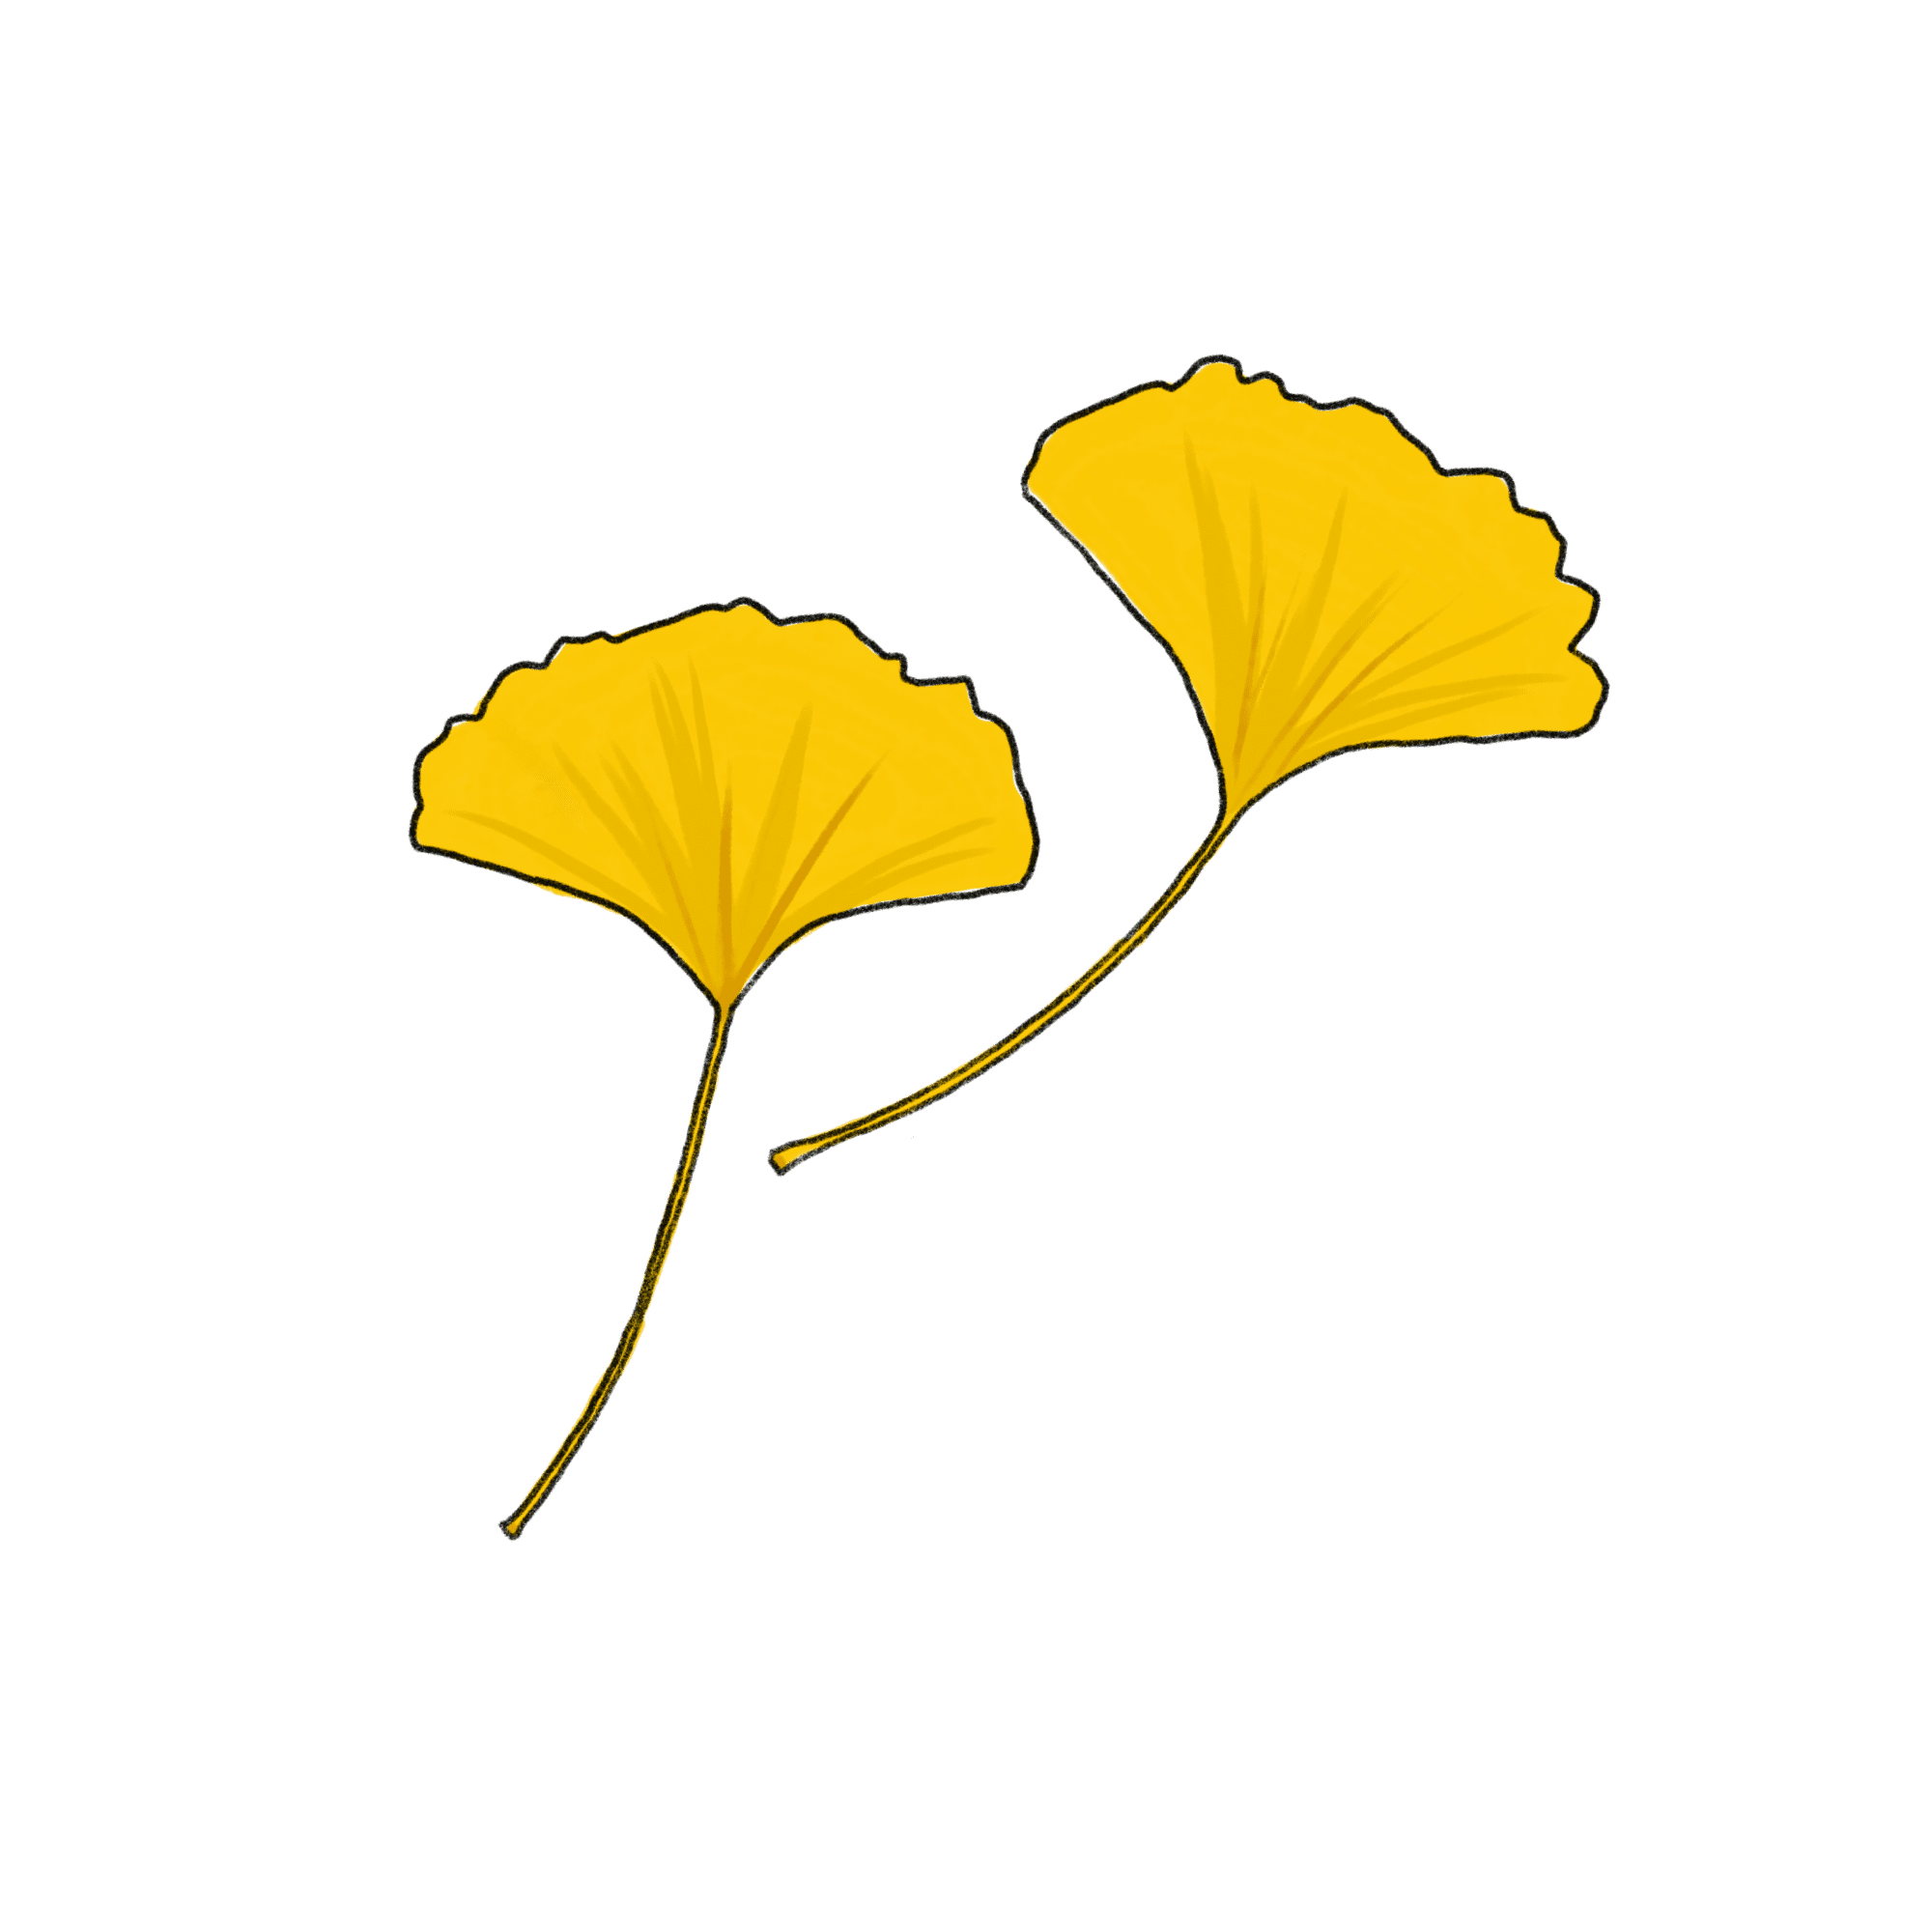 イチョウの葉のイラスト 02 フリー素材 Greenstock40